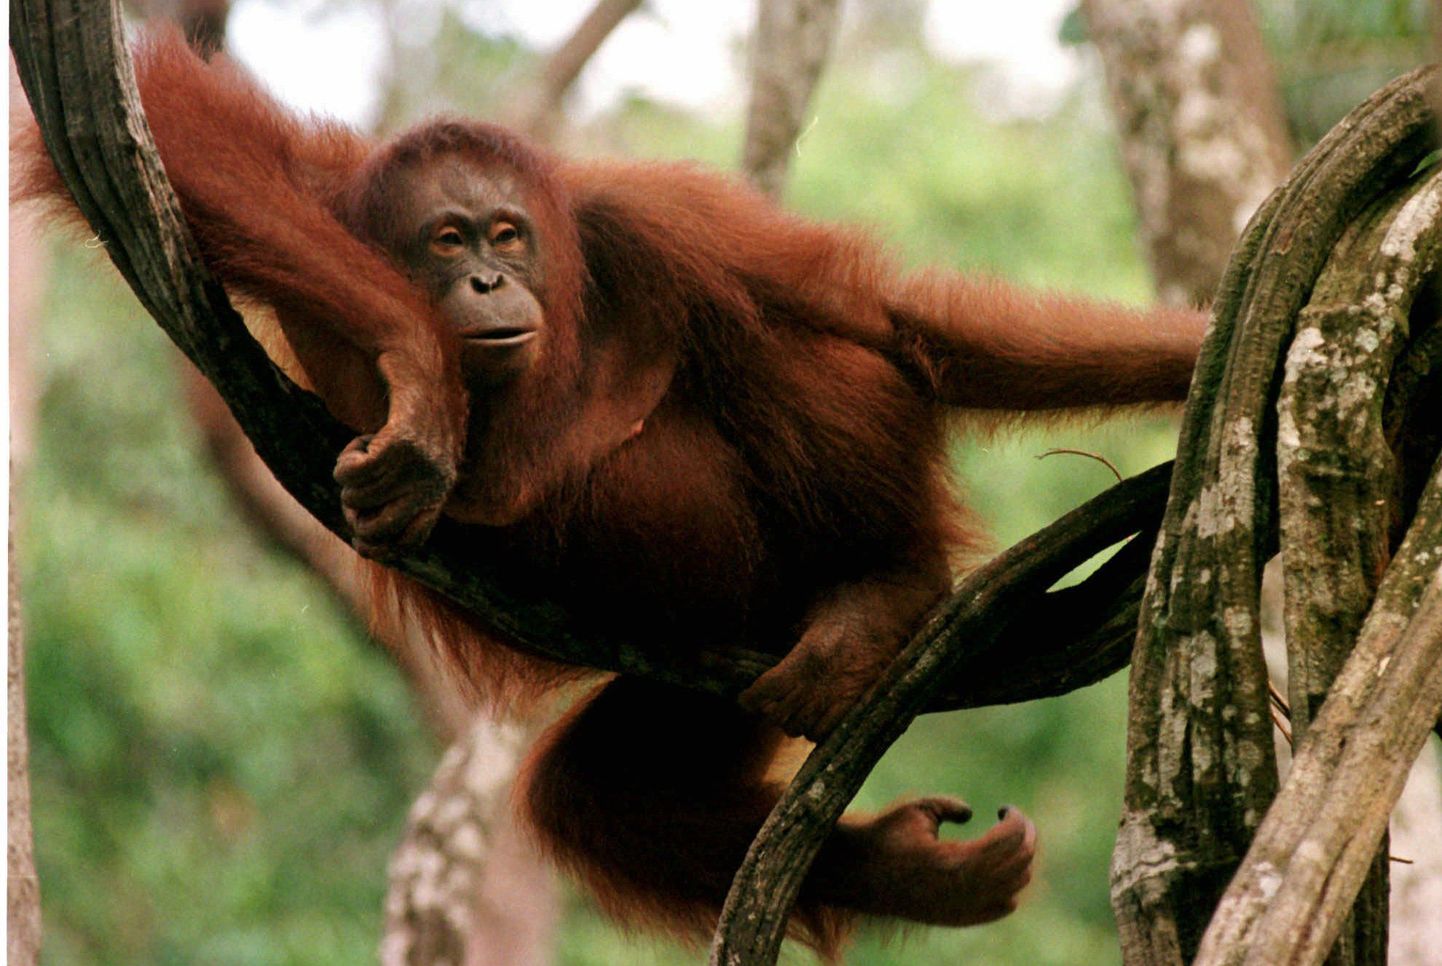 Orangutan. Fotol olev loom pole juhtumiga seotud